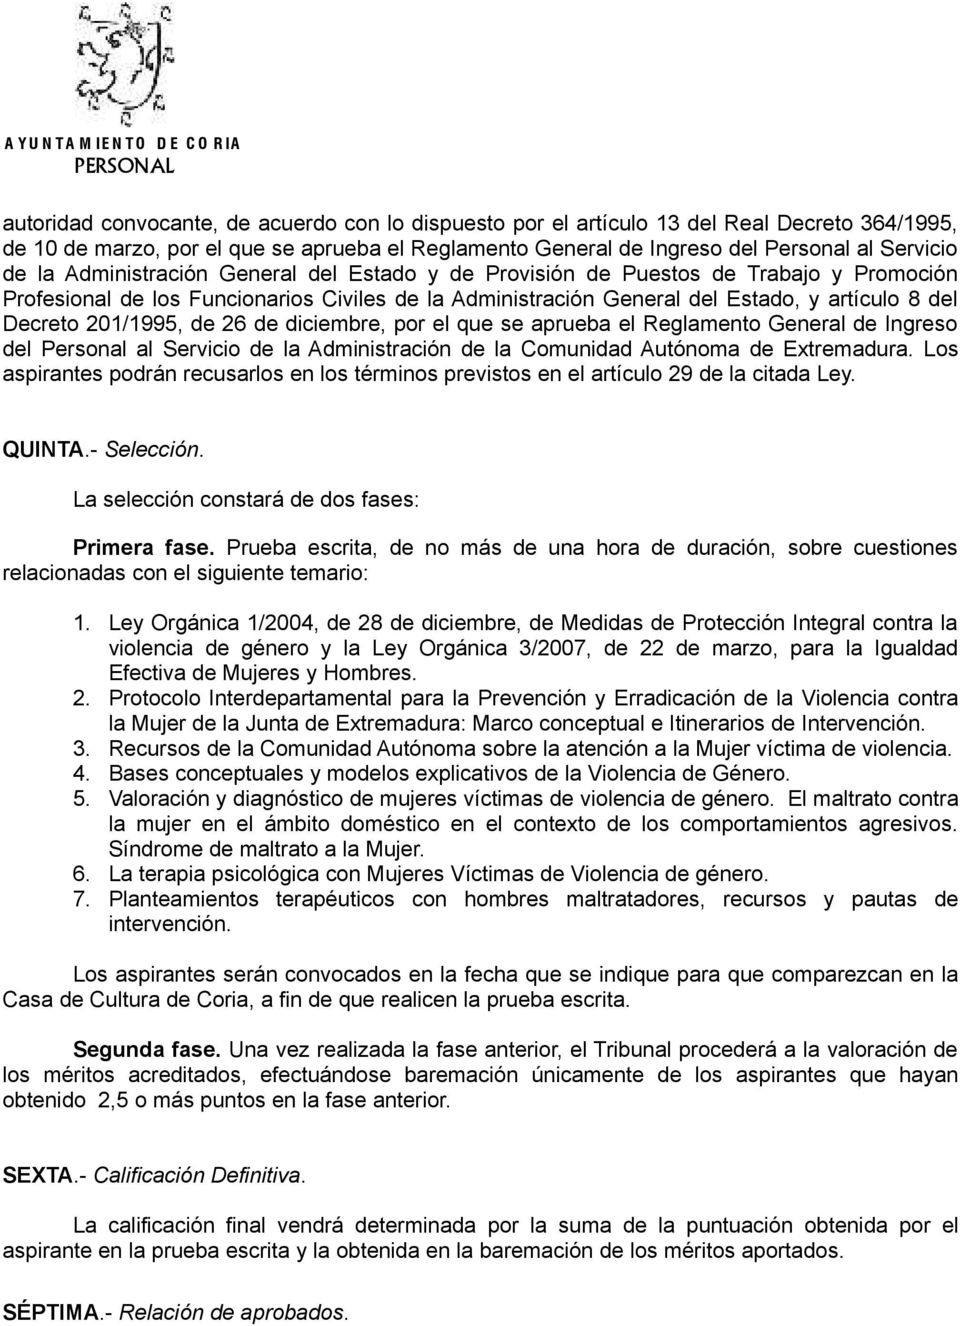 de 26 de diciembre, por el que se aprueba el Reglamento General de Ingreso del Personal al Servicio de la Administración de la Comunidad Autónoma de Extremadura.